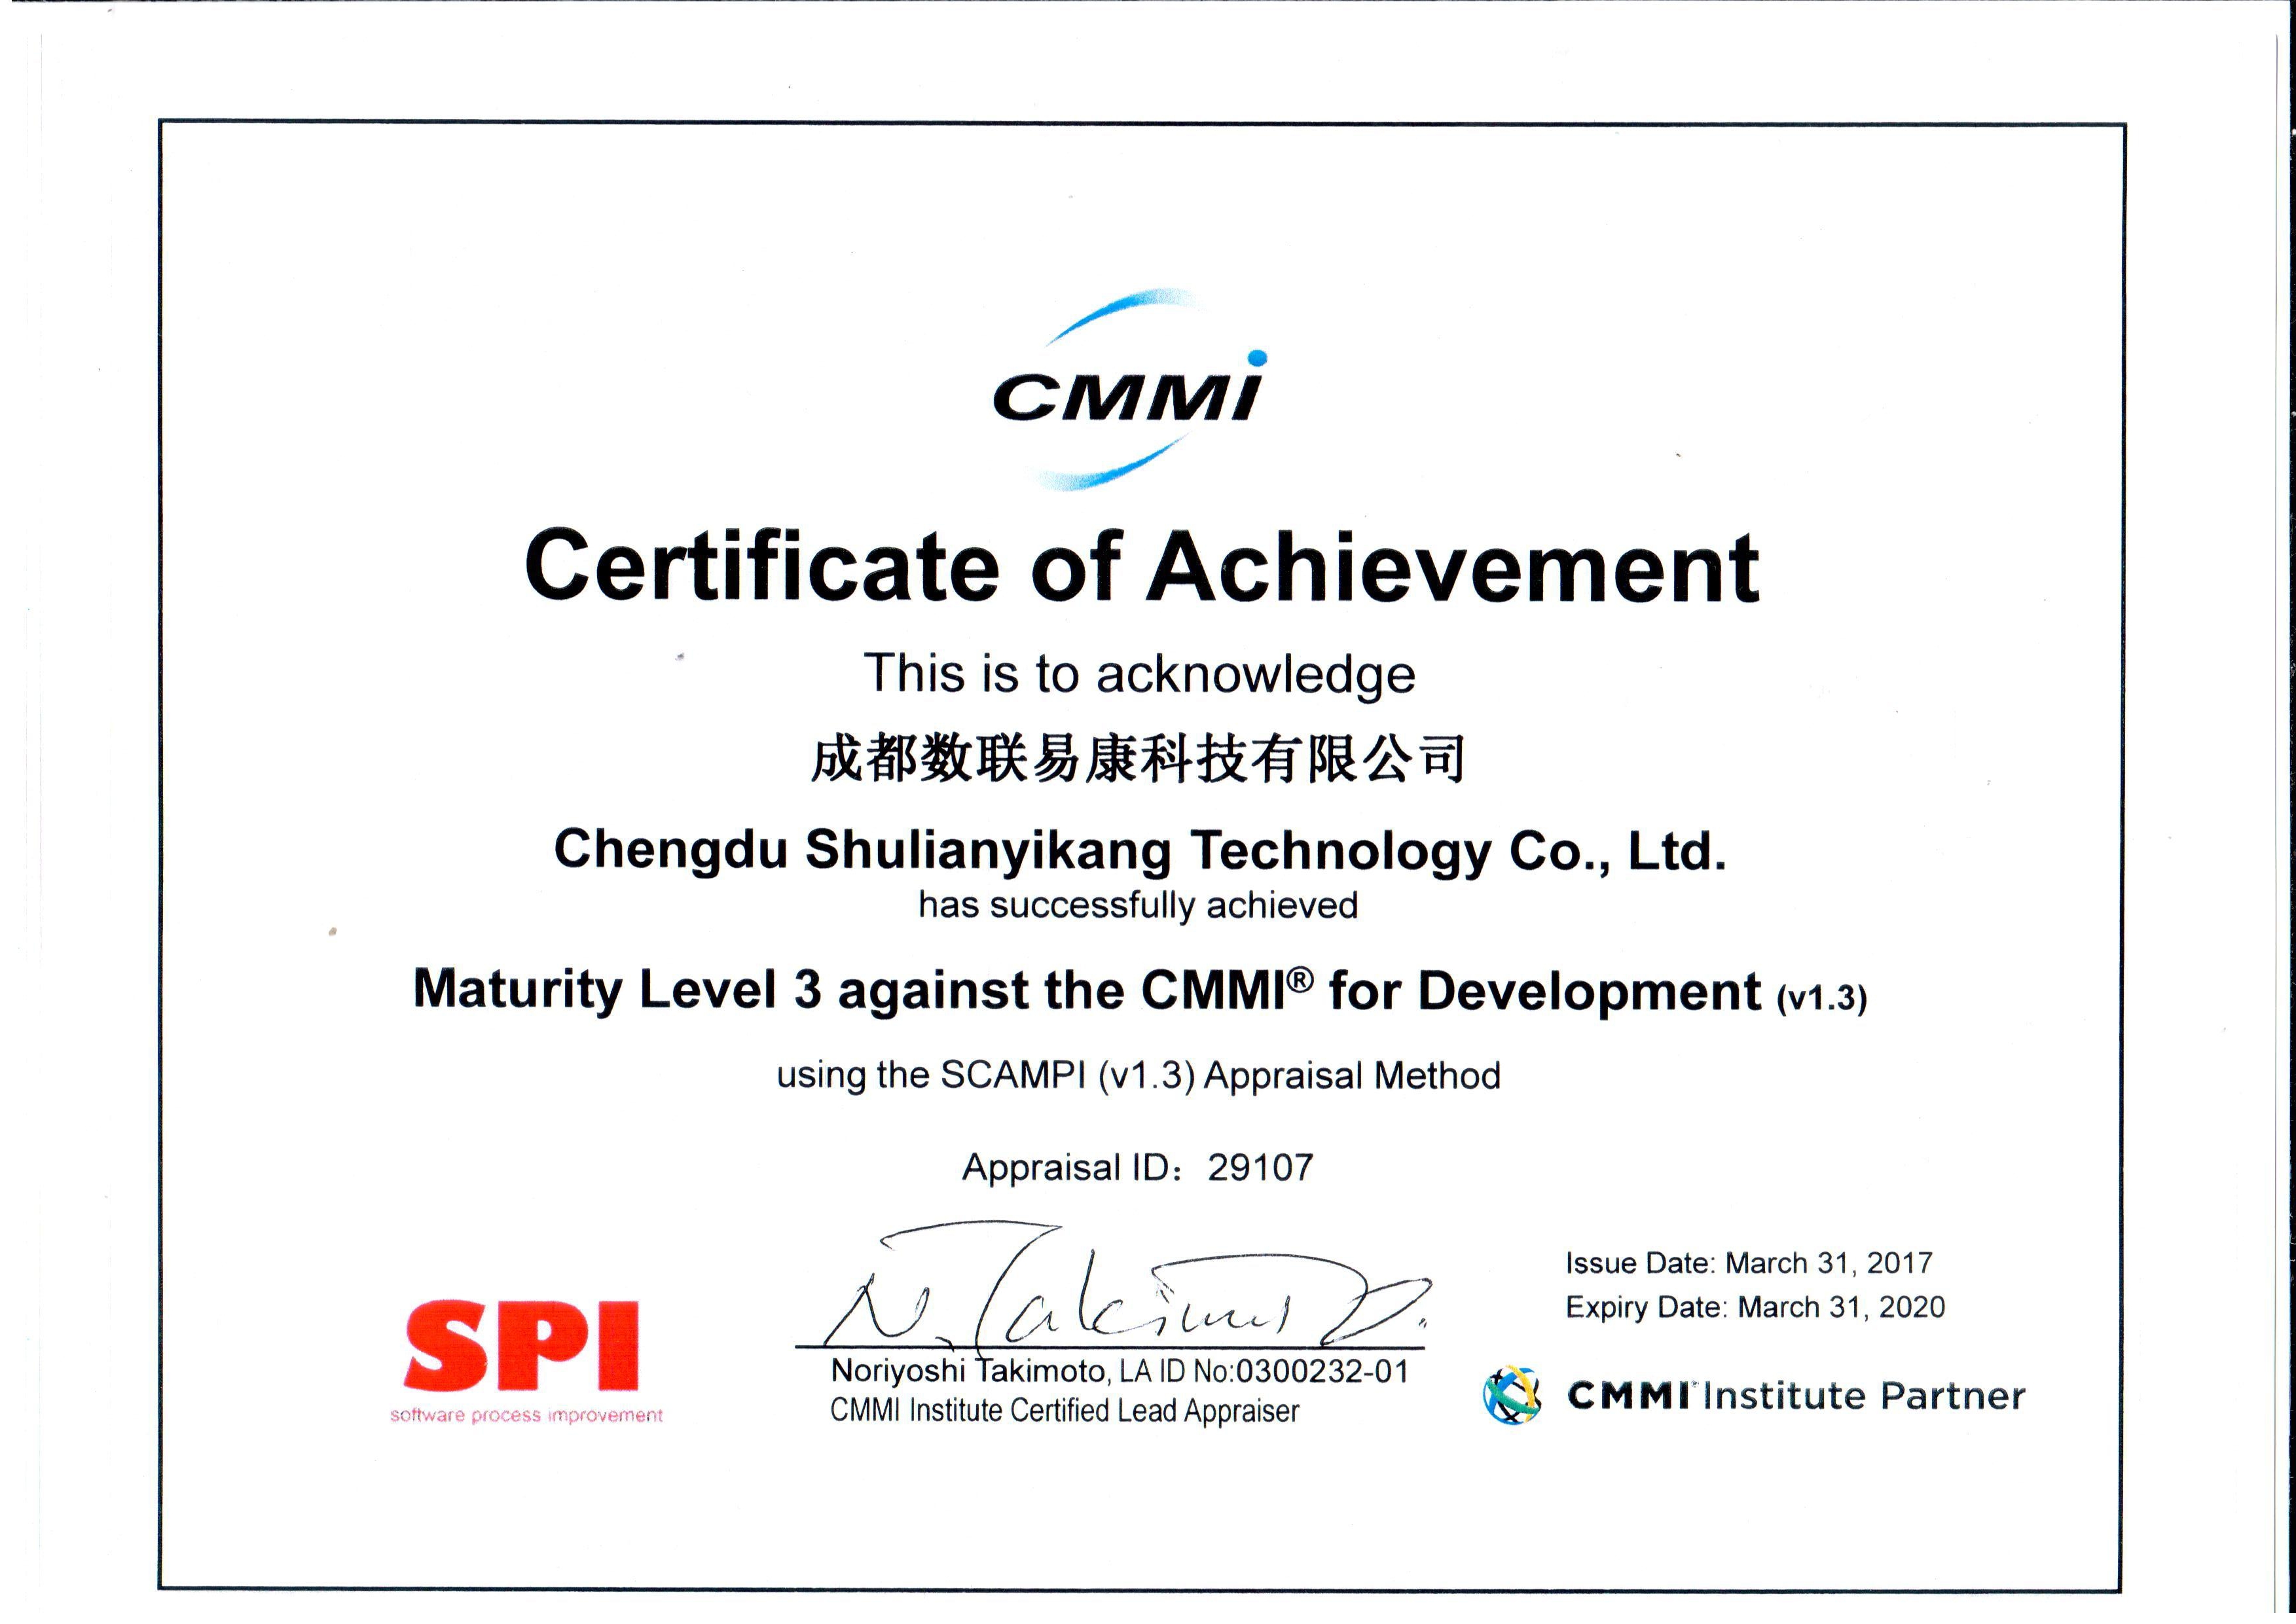 成都数联易康科技有限公司(以下简称数联易康)成功通过了cmmi3级认证